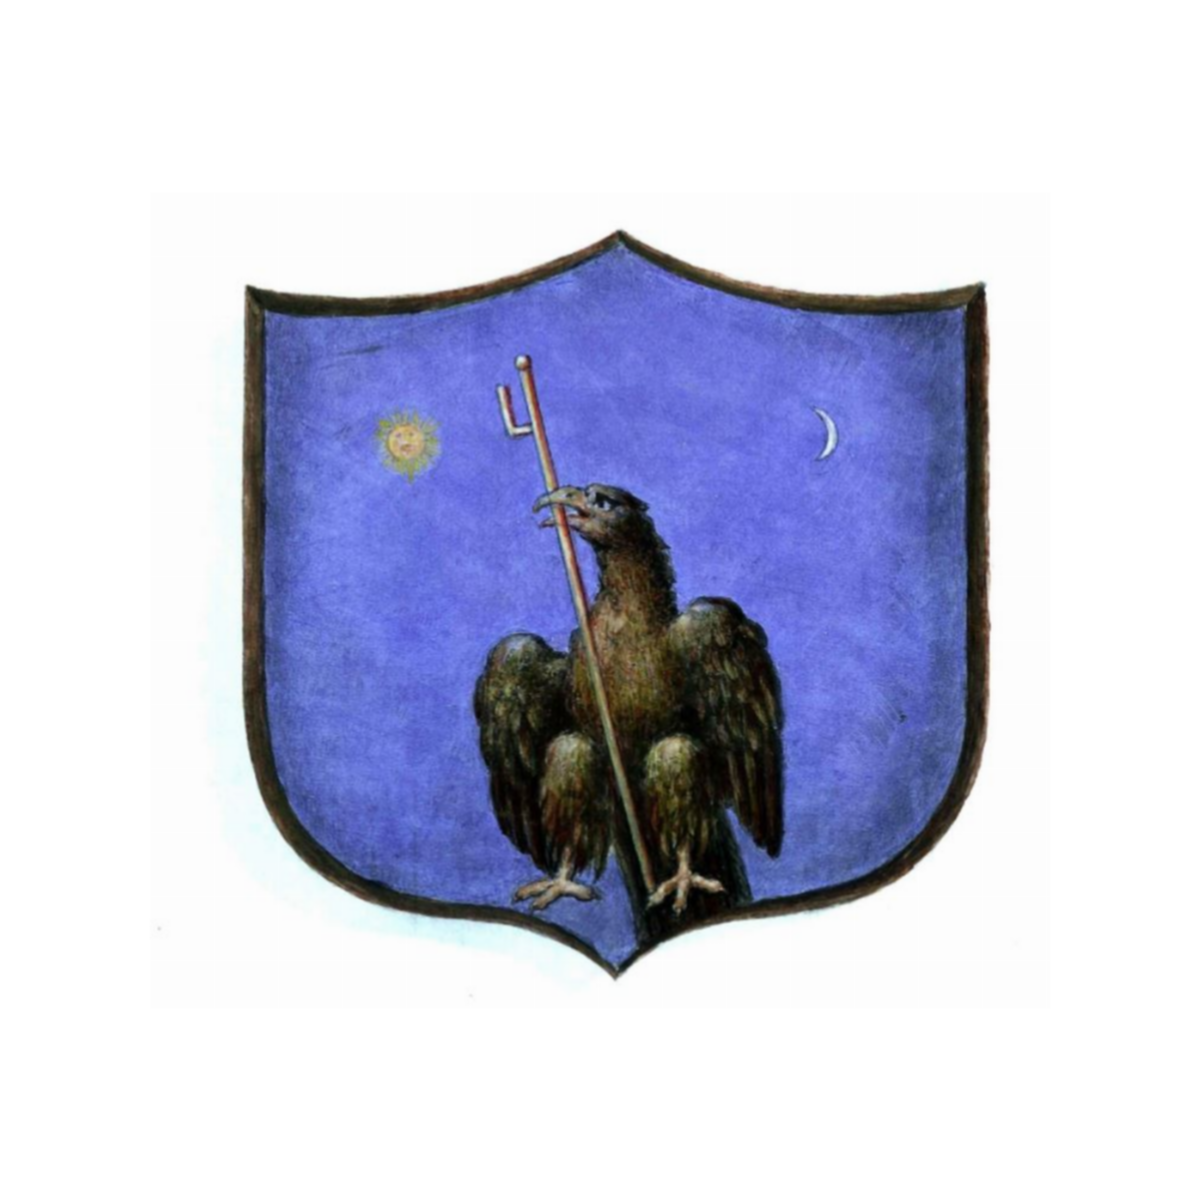 Coat of arms of familyPellegrini, de Pellegrini,Pellegrinelli,Pellegrinello,Pellegrini Trieste